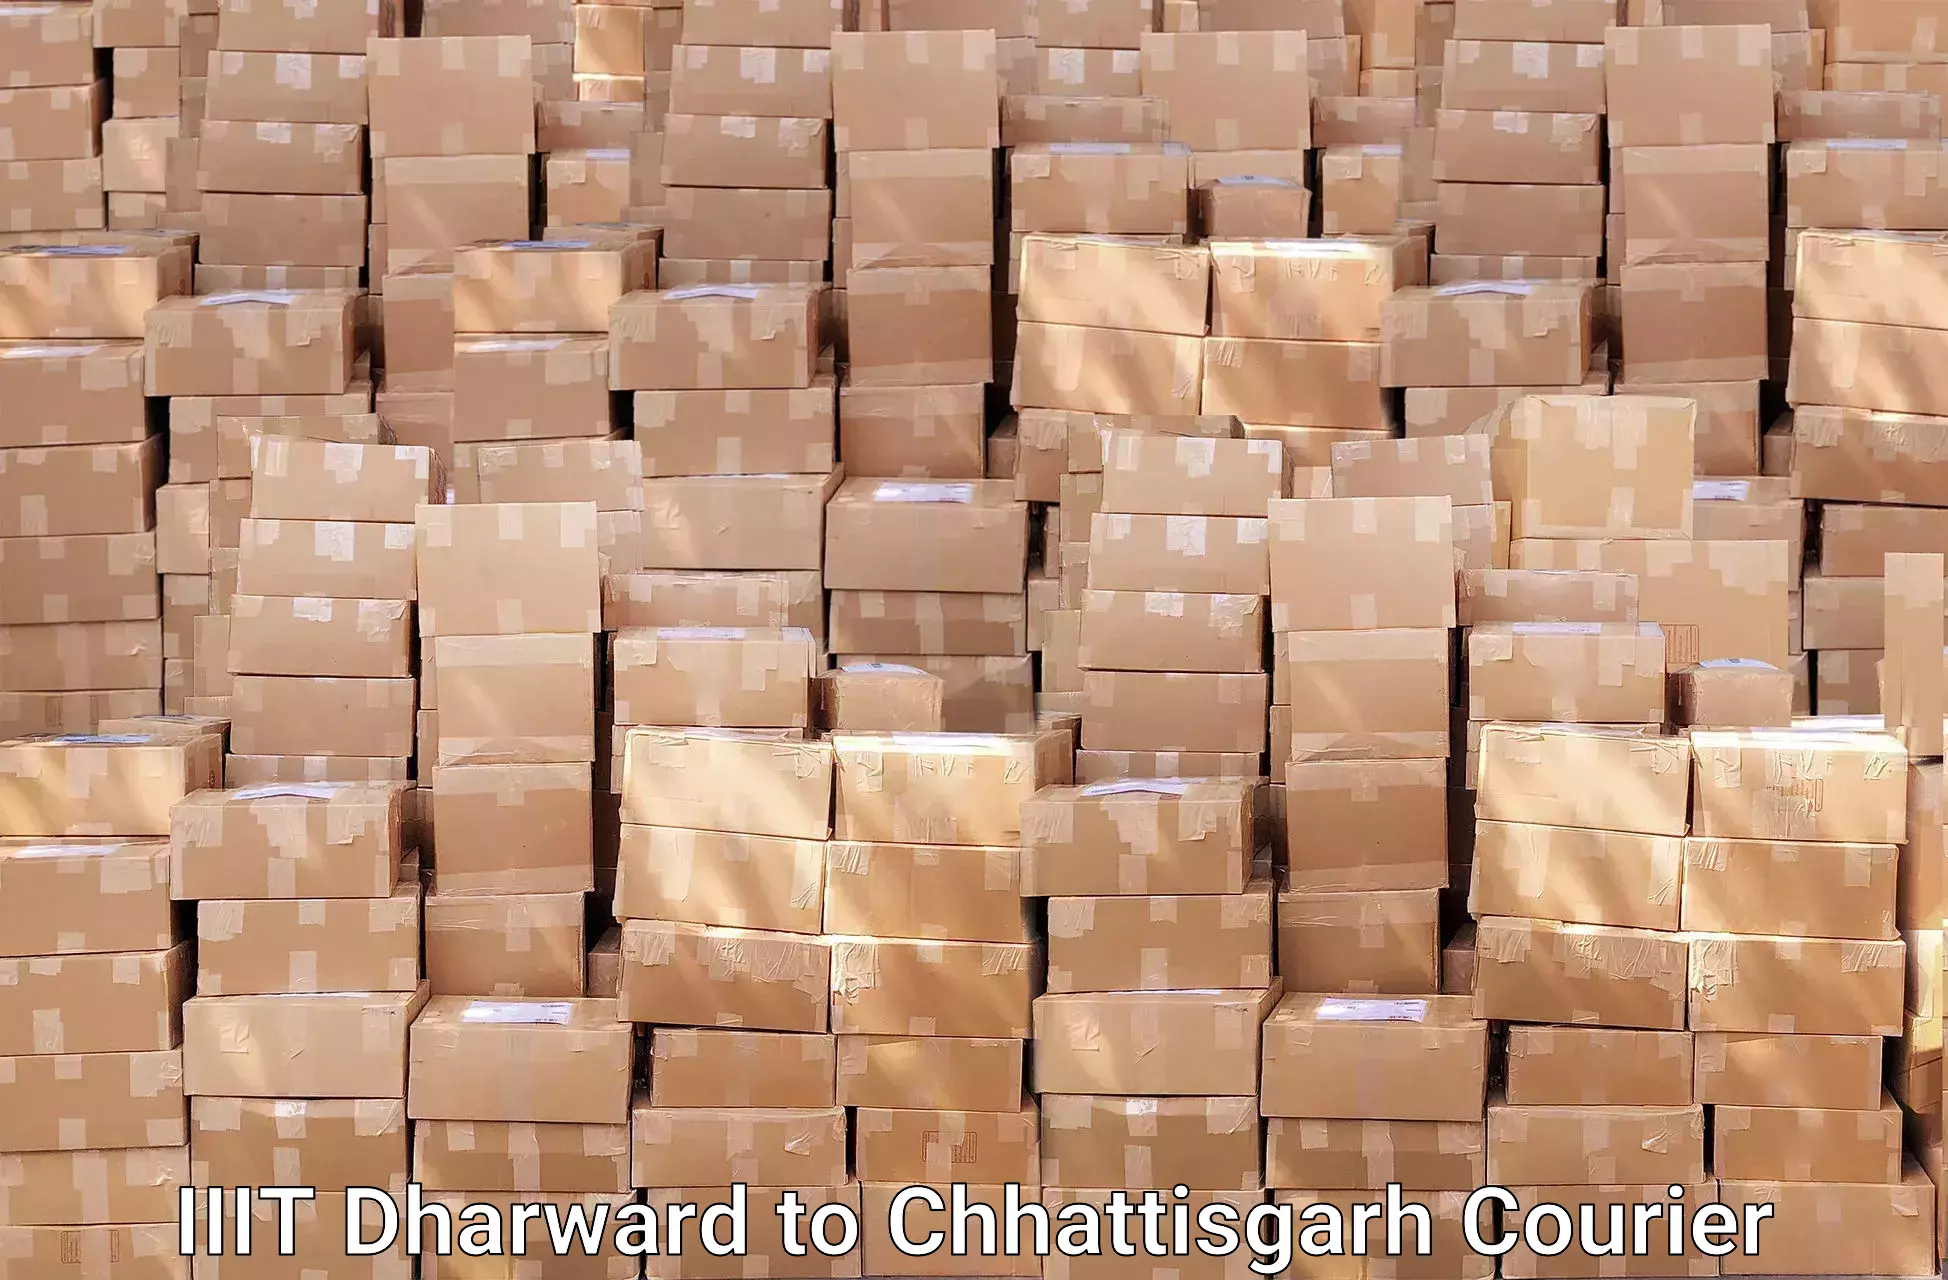 Efficient relocation services IIIT Dharward to Chhattisgarh